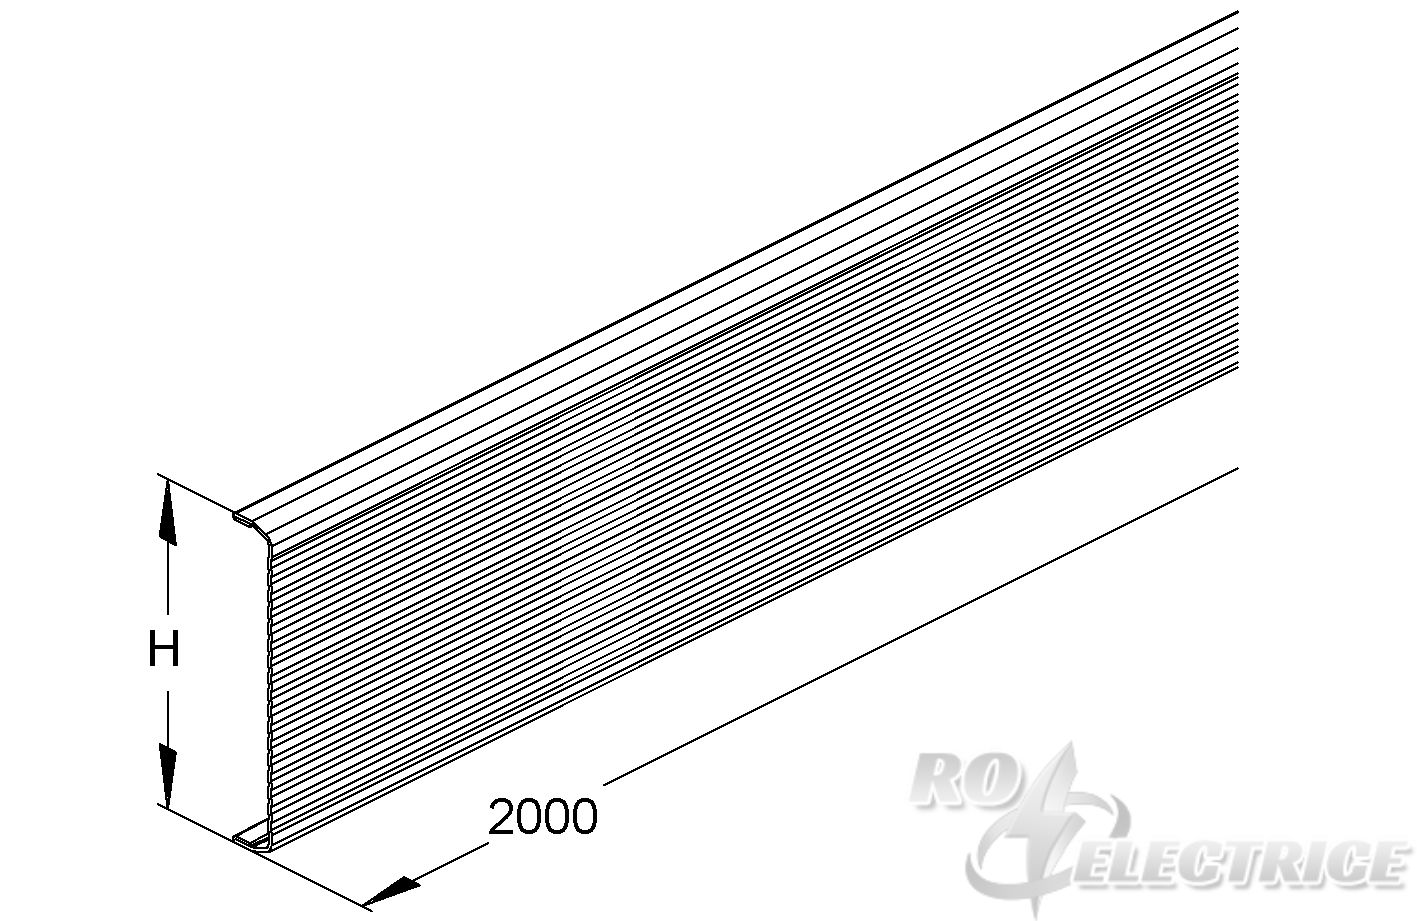 GK-Deckel, kanneliert, 78x2000 mm, Stahl, bandverzinkt DIN EN 10346, pulverbesch. RAL 9006, inkl. Zubehör